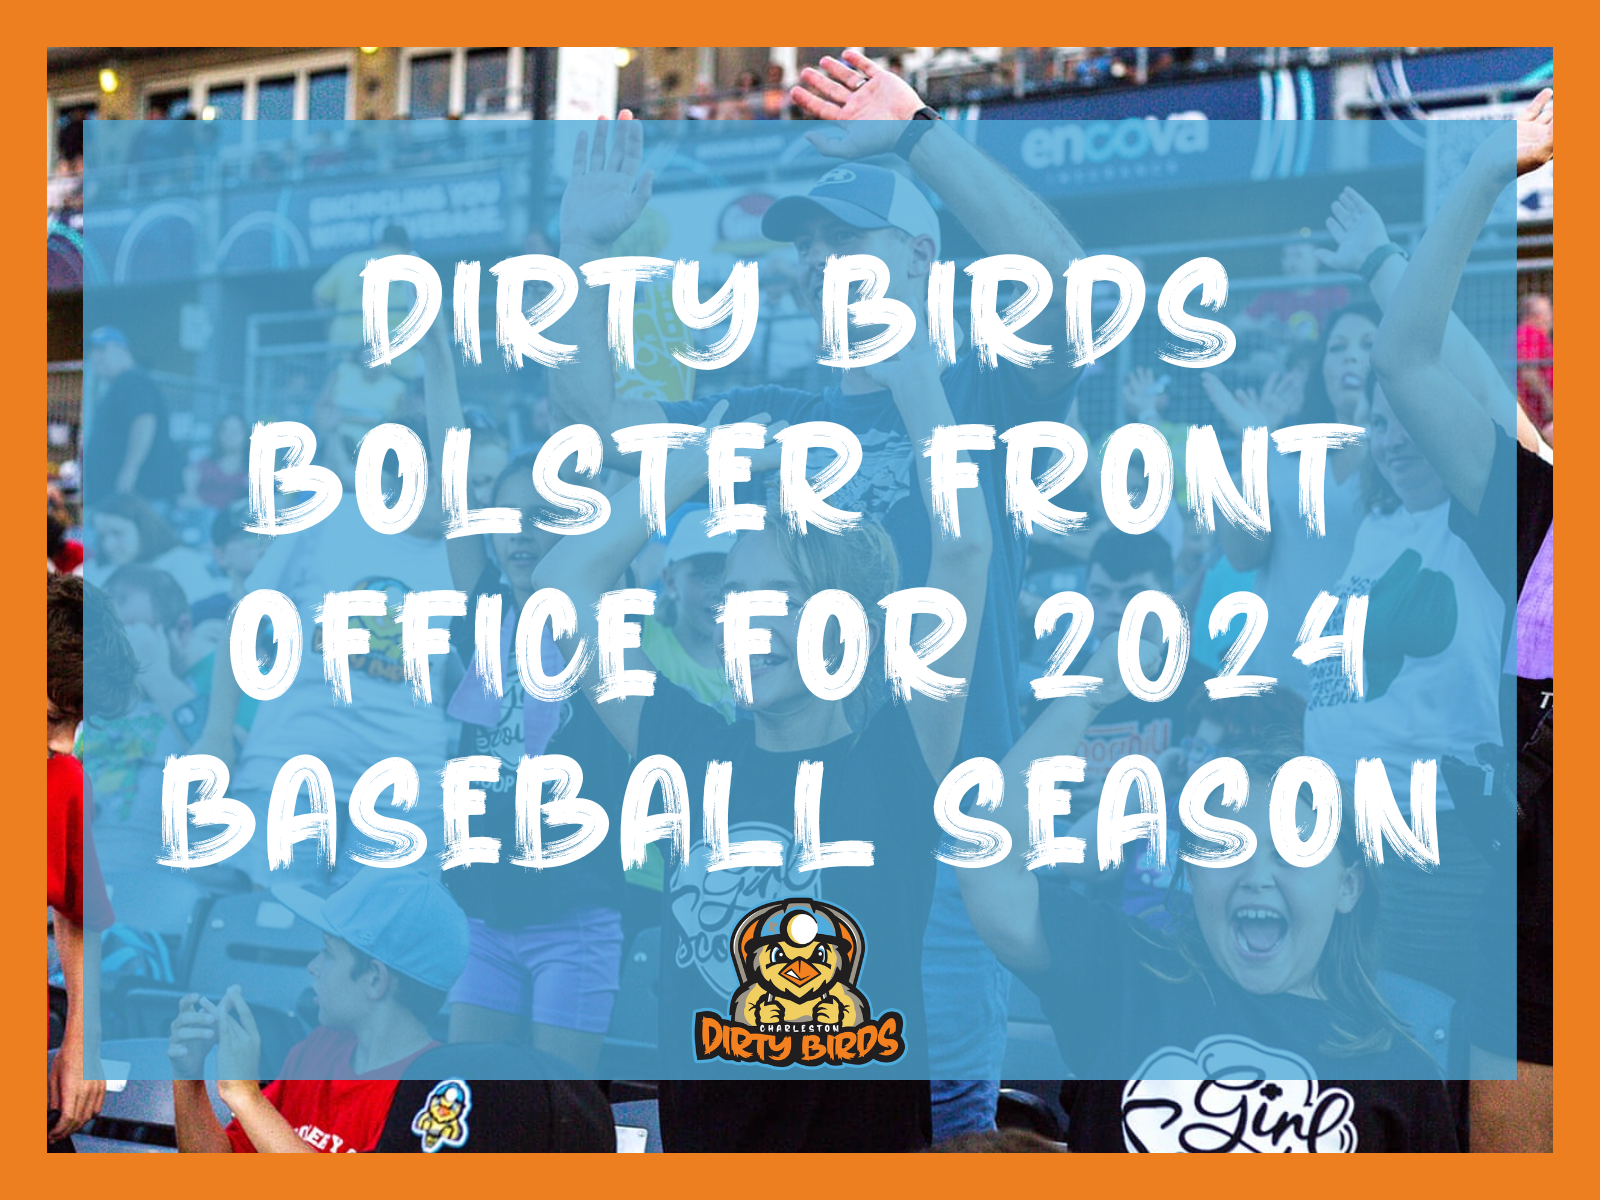 DIRTY BIRDS BOLSTER FRONT OFFICE FOR 2024 BASEBALL SEASON